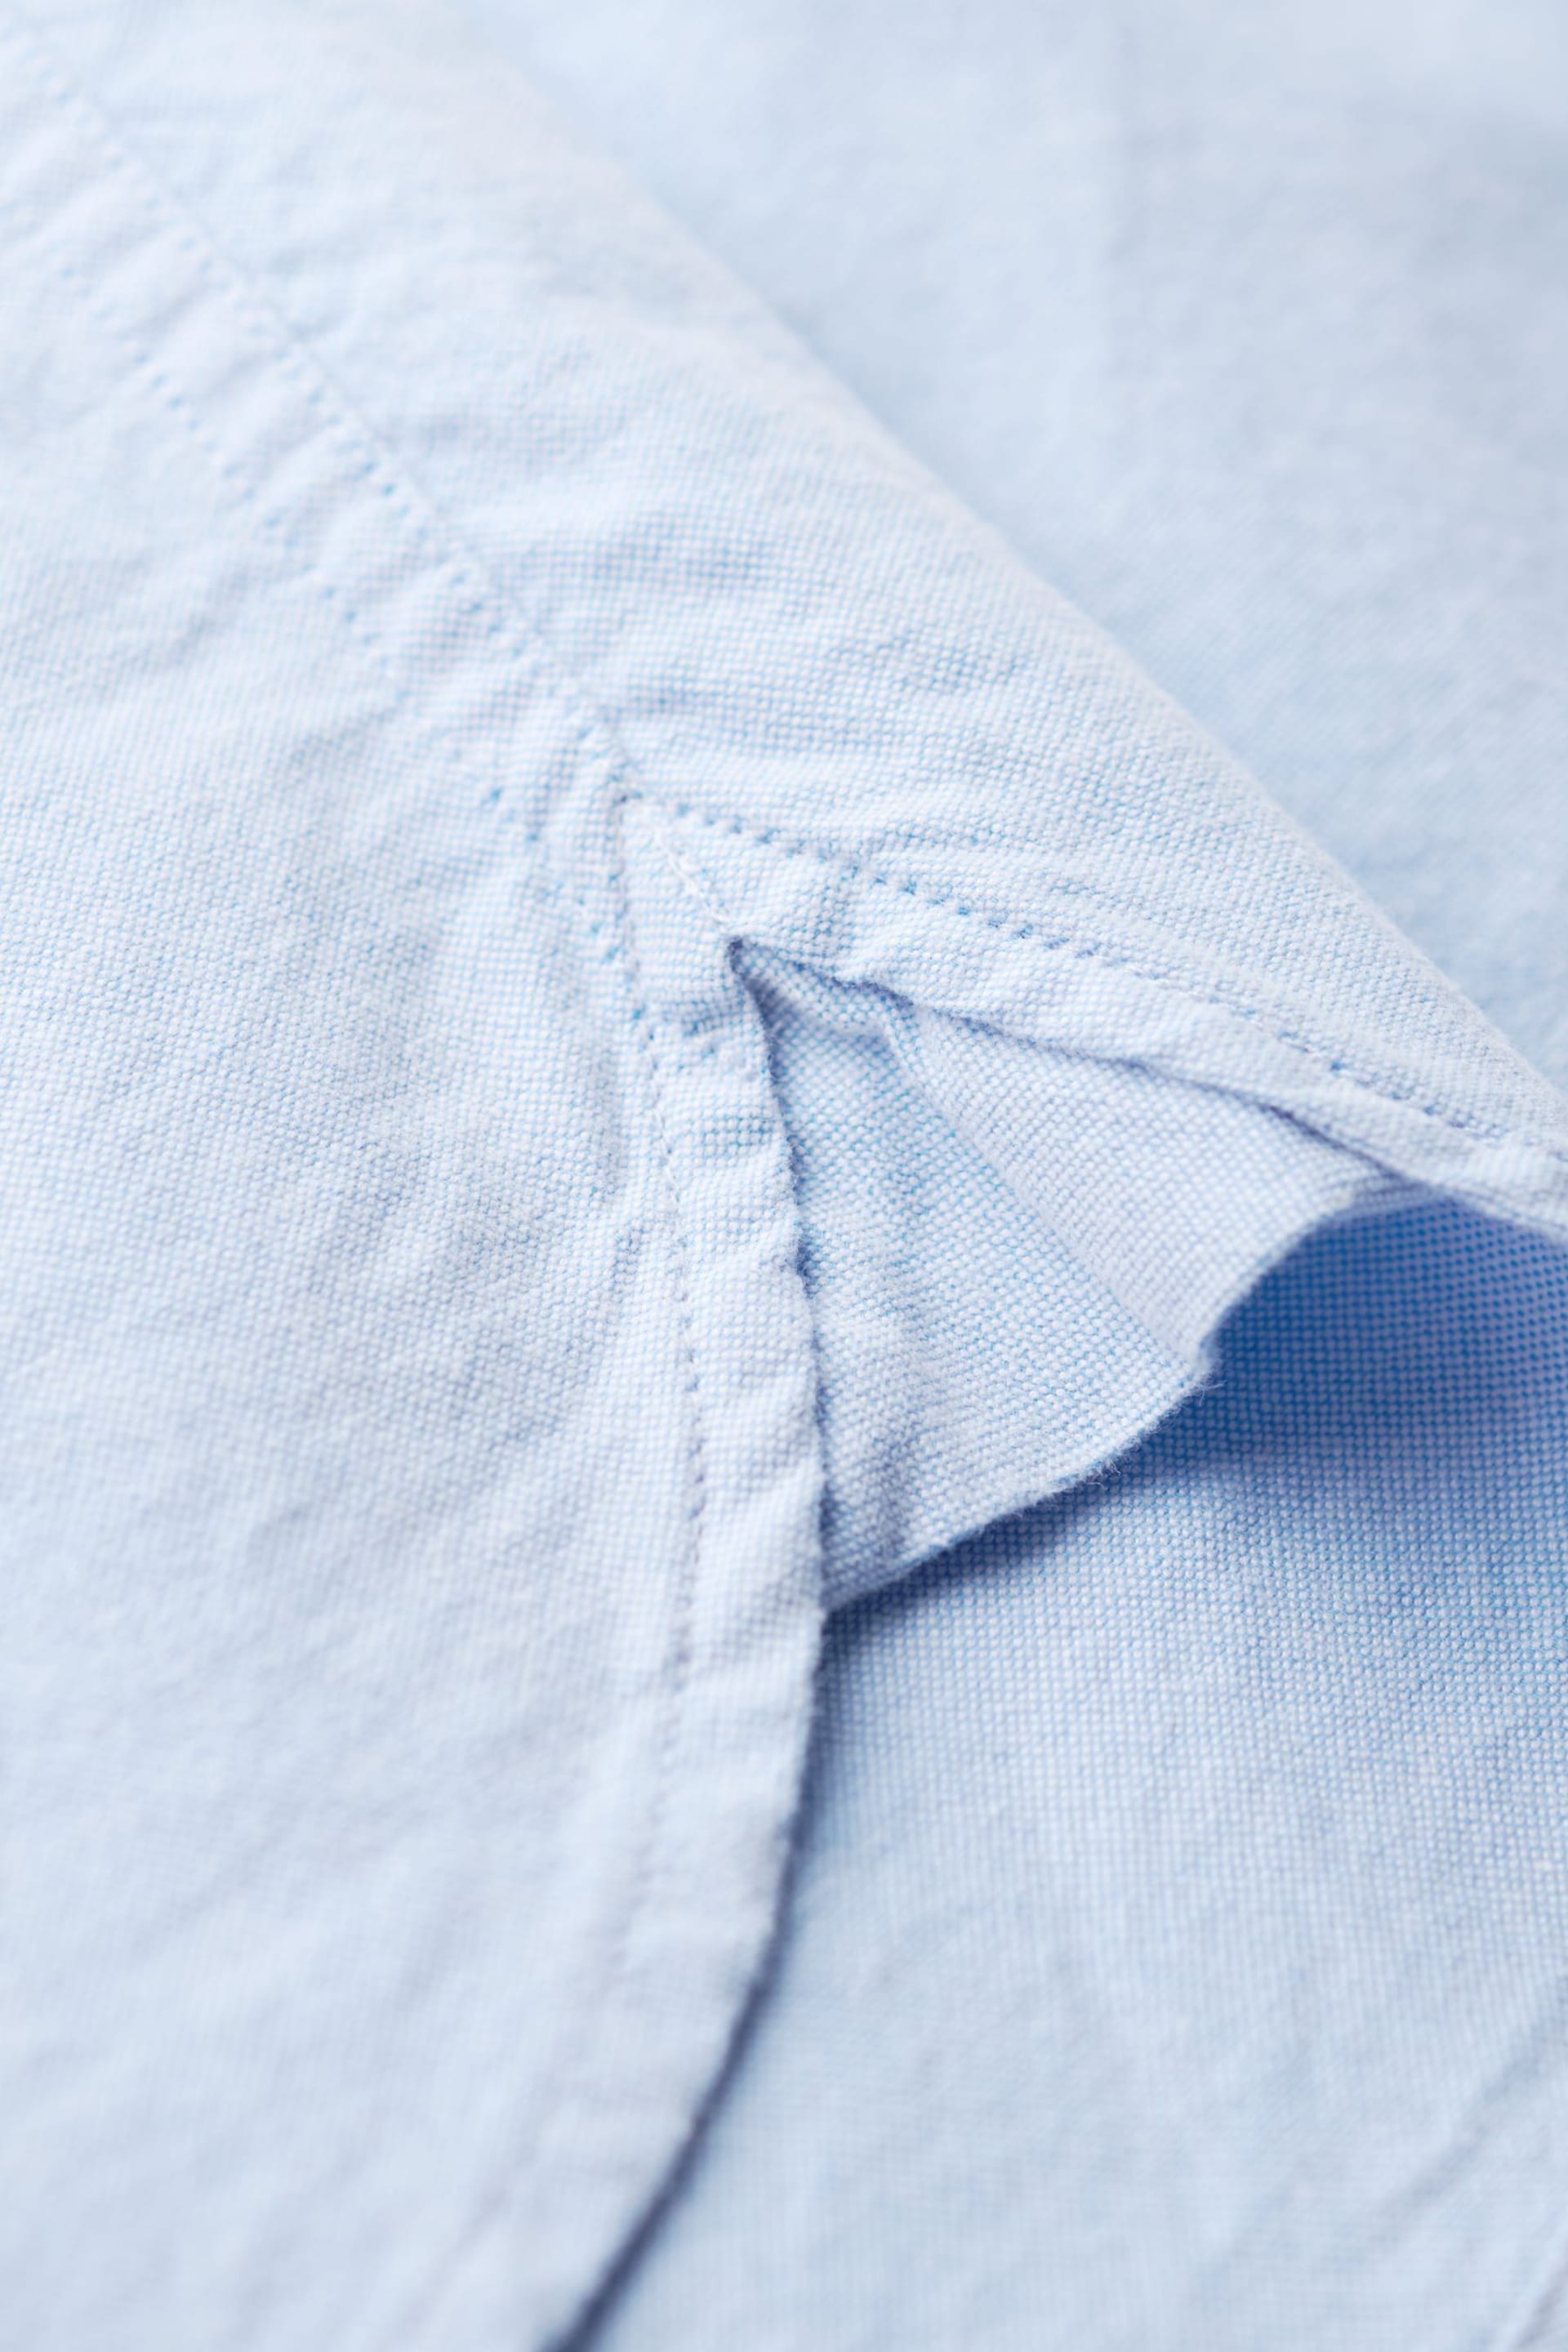 Superdry Blue Vintage Oxford Short Sleeve Shirt - Image 8 of 9